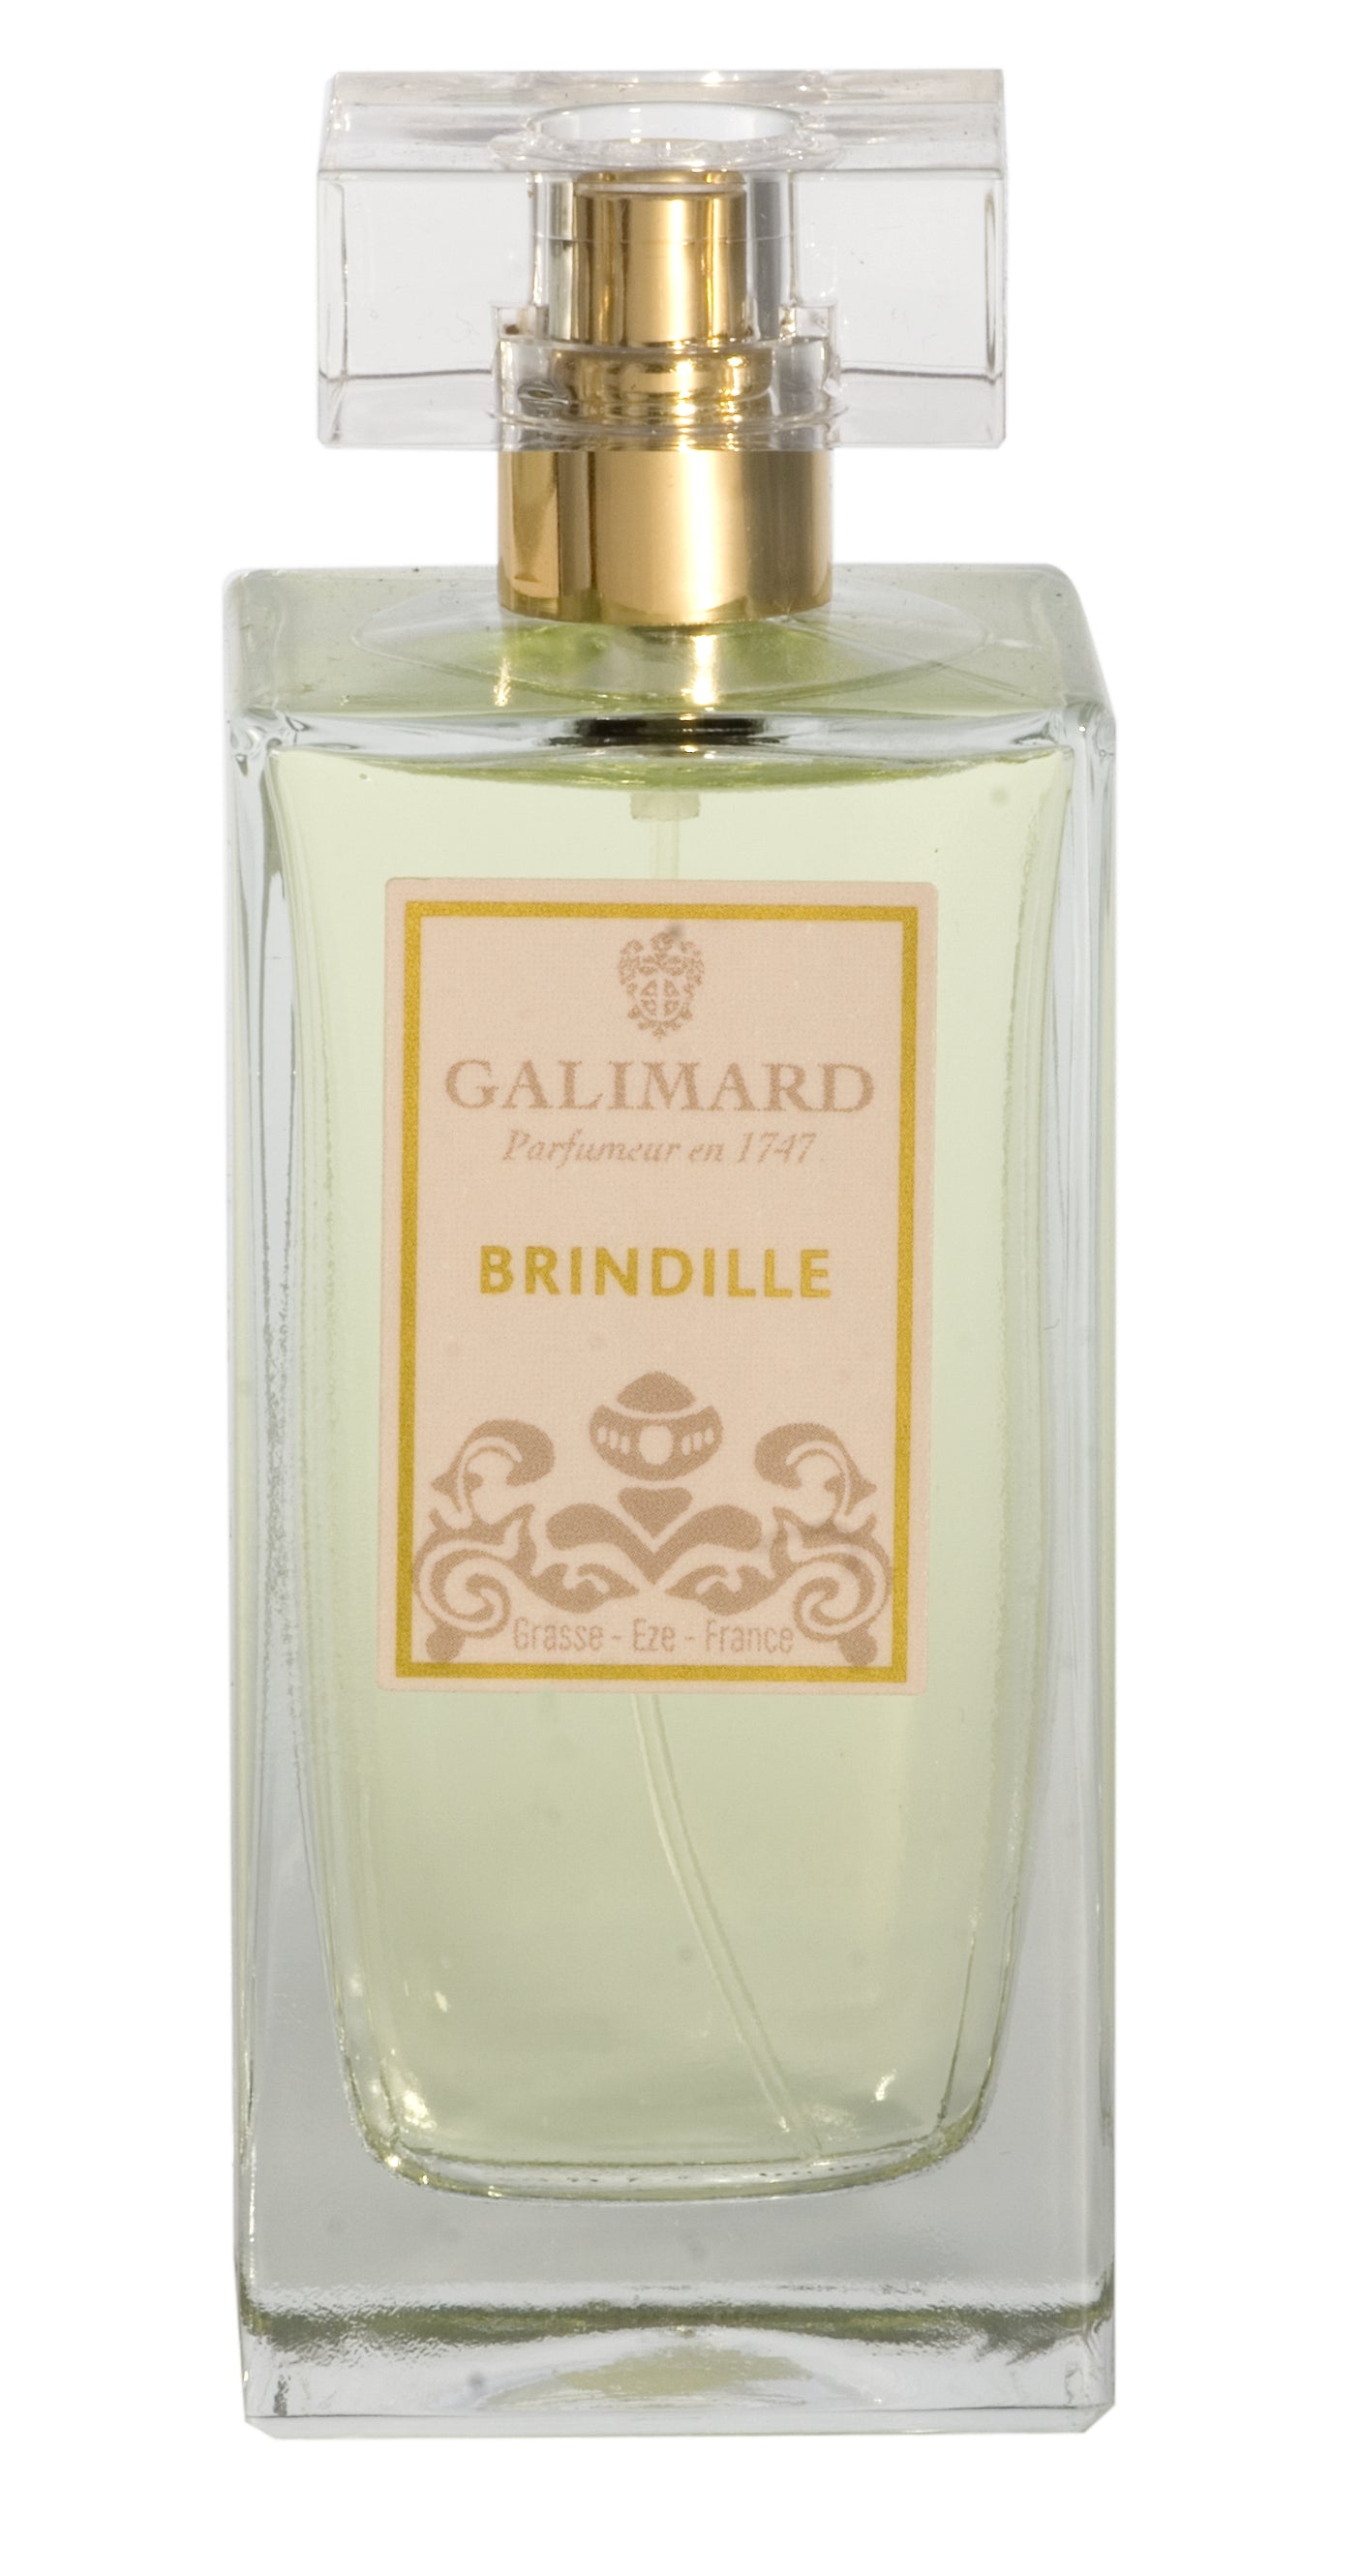 Galimard Brindille Pure Parfum 100ml